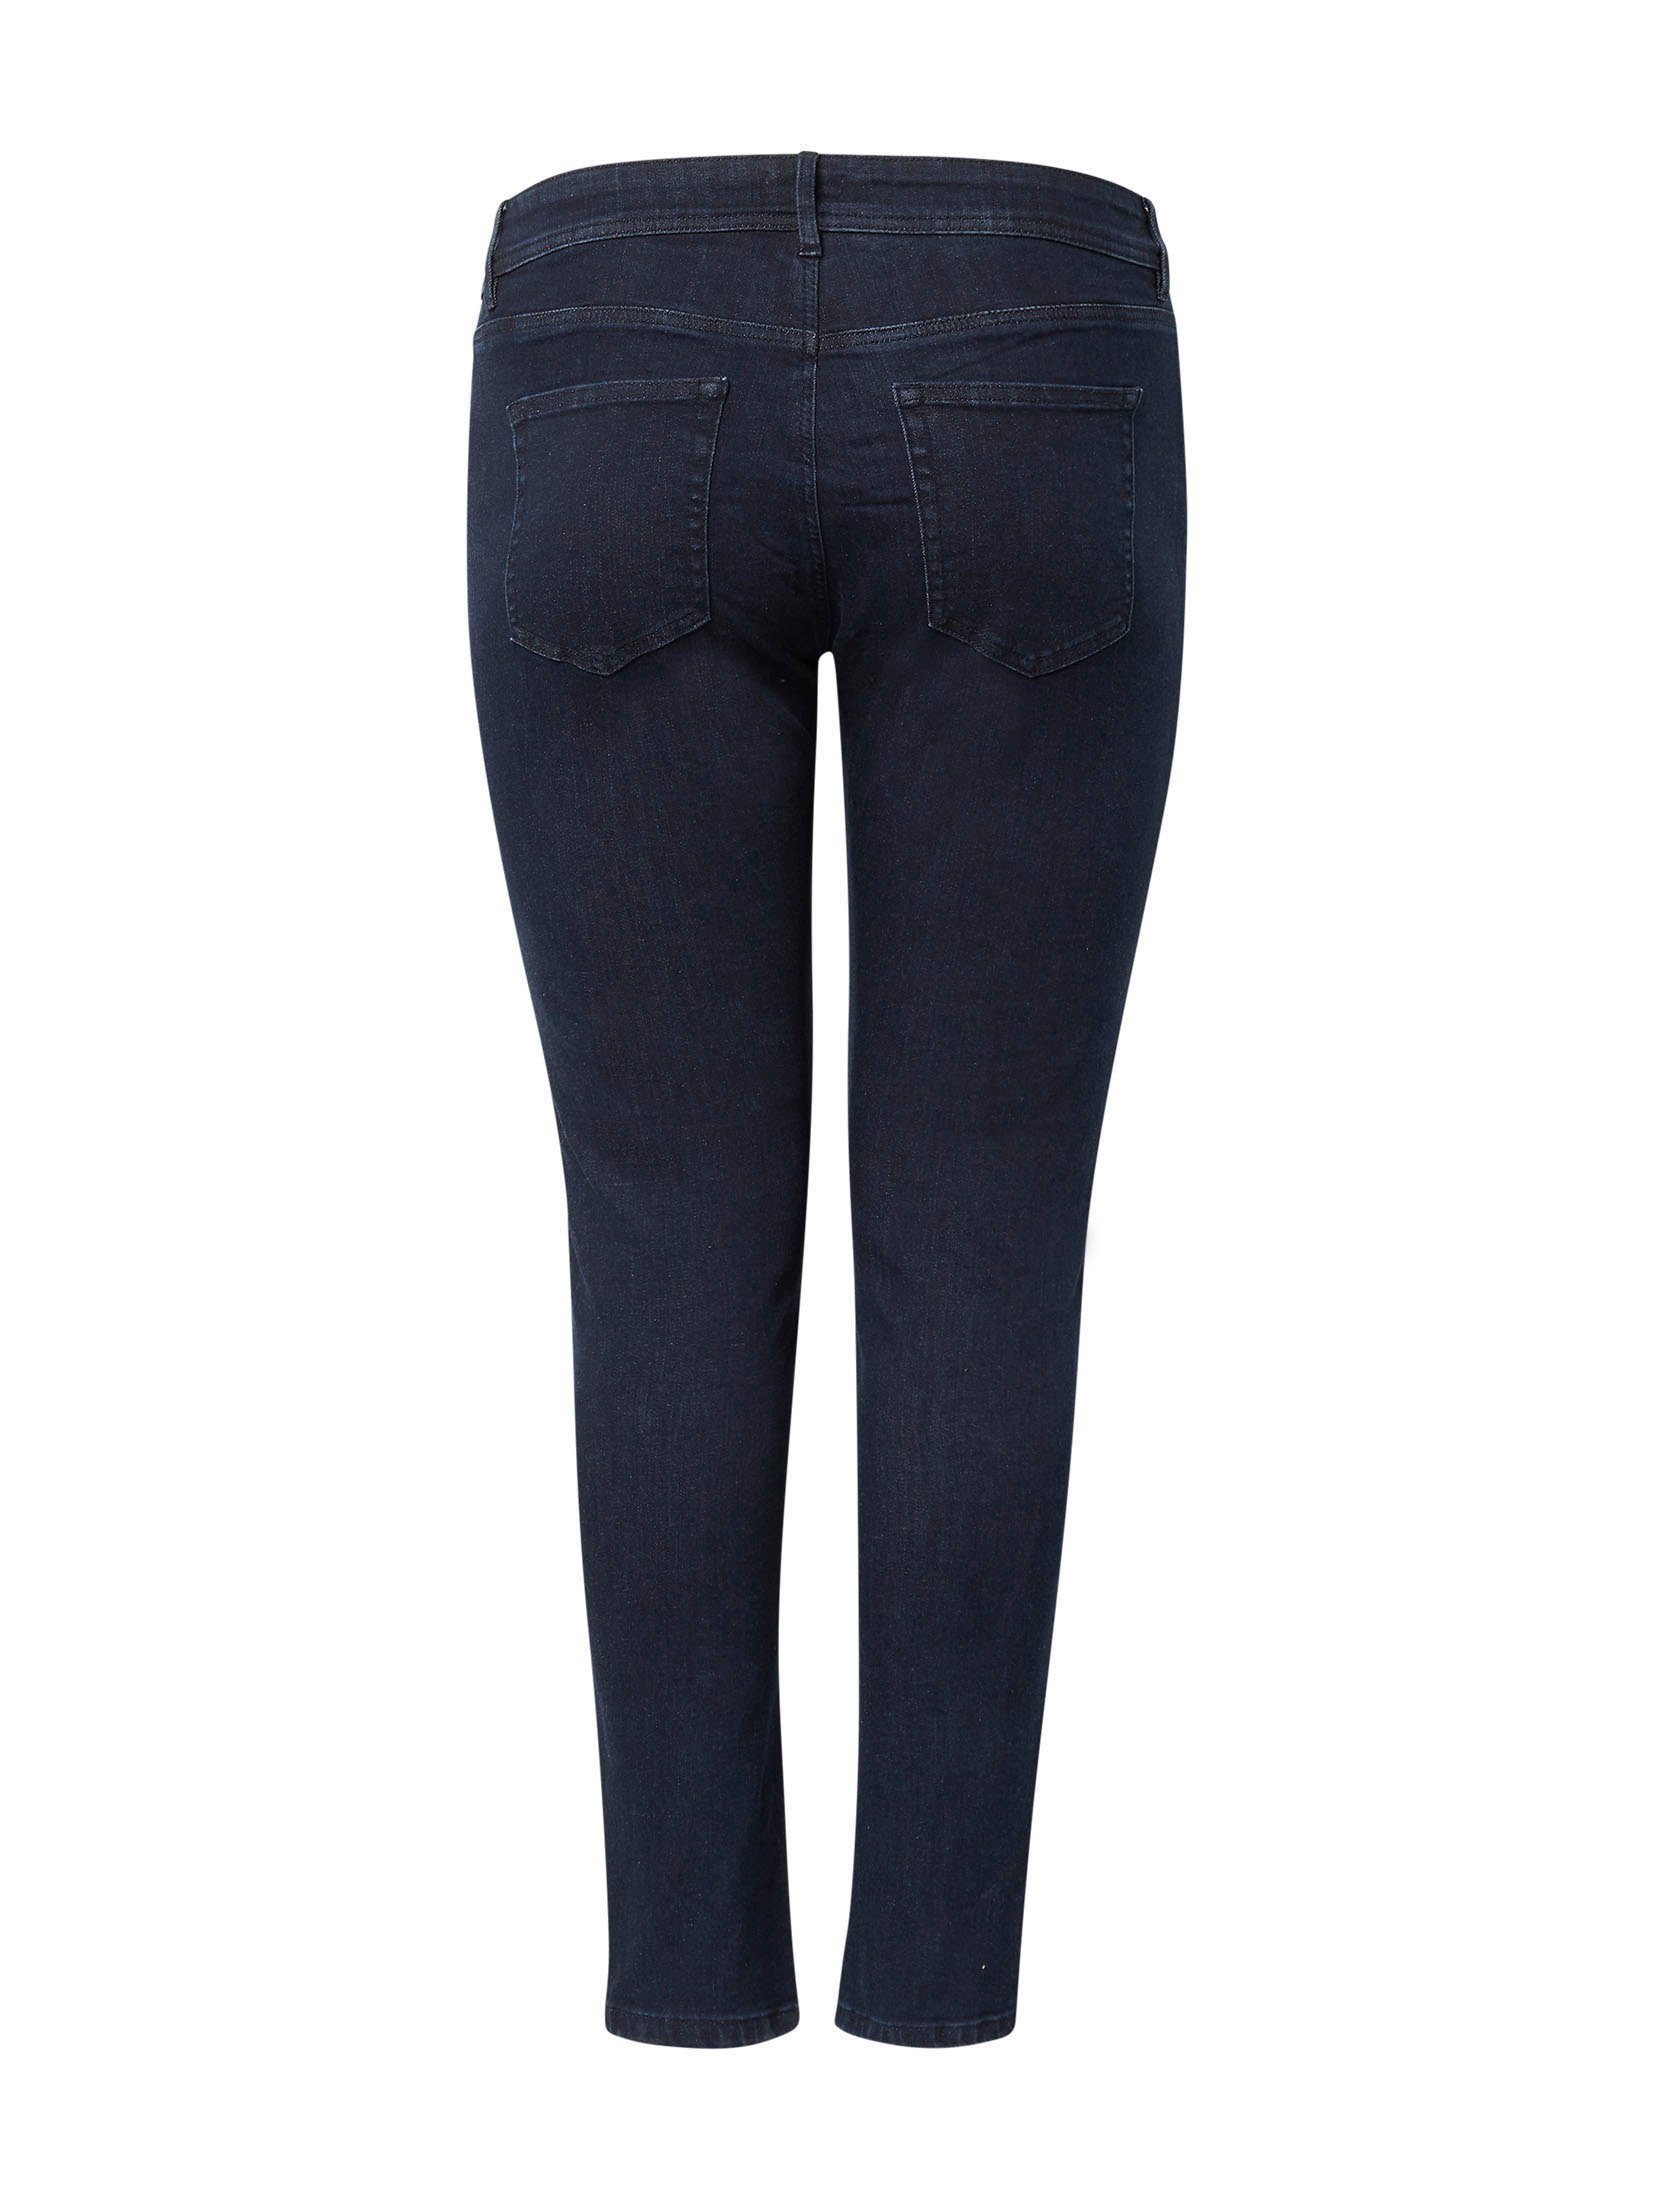 TOM TAILOR Pocket- Skinny-fit-Jeans PLUS 5- klassischer Form darkblue-denim in